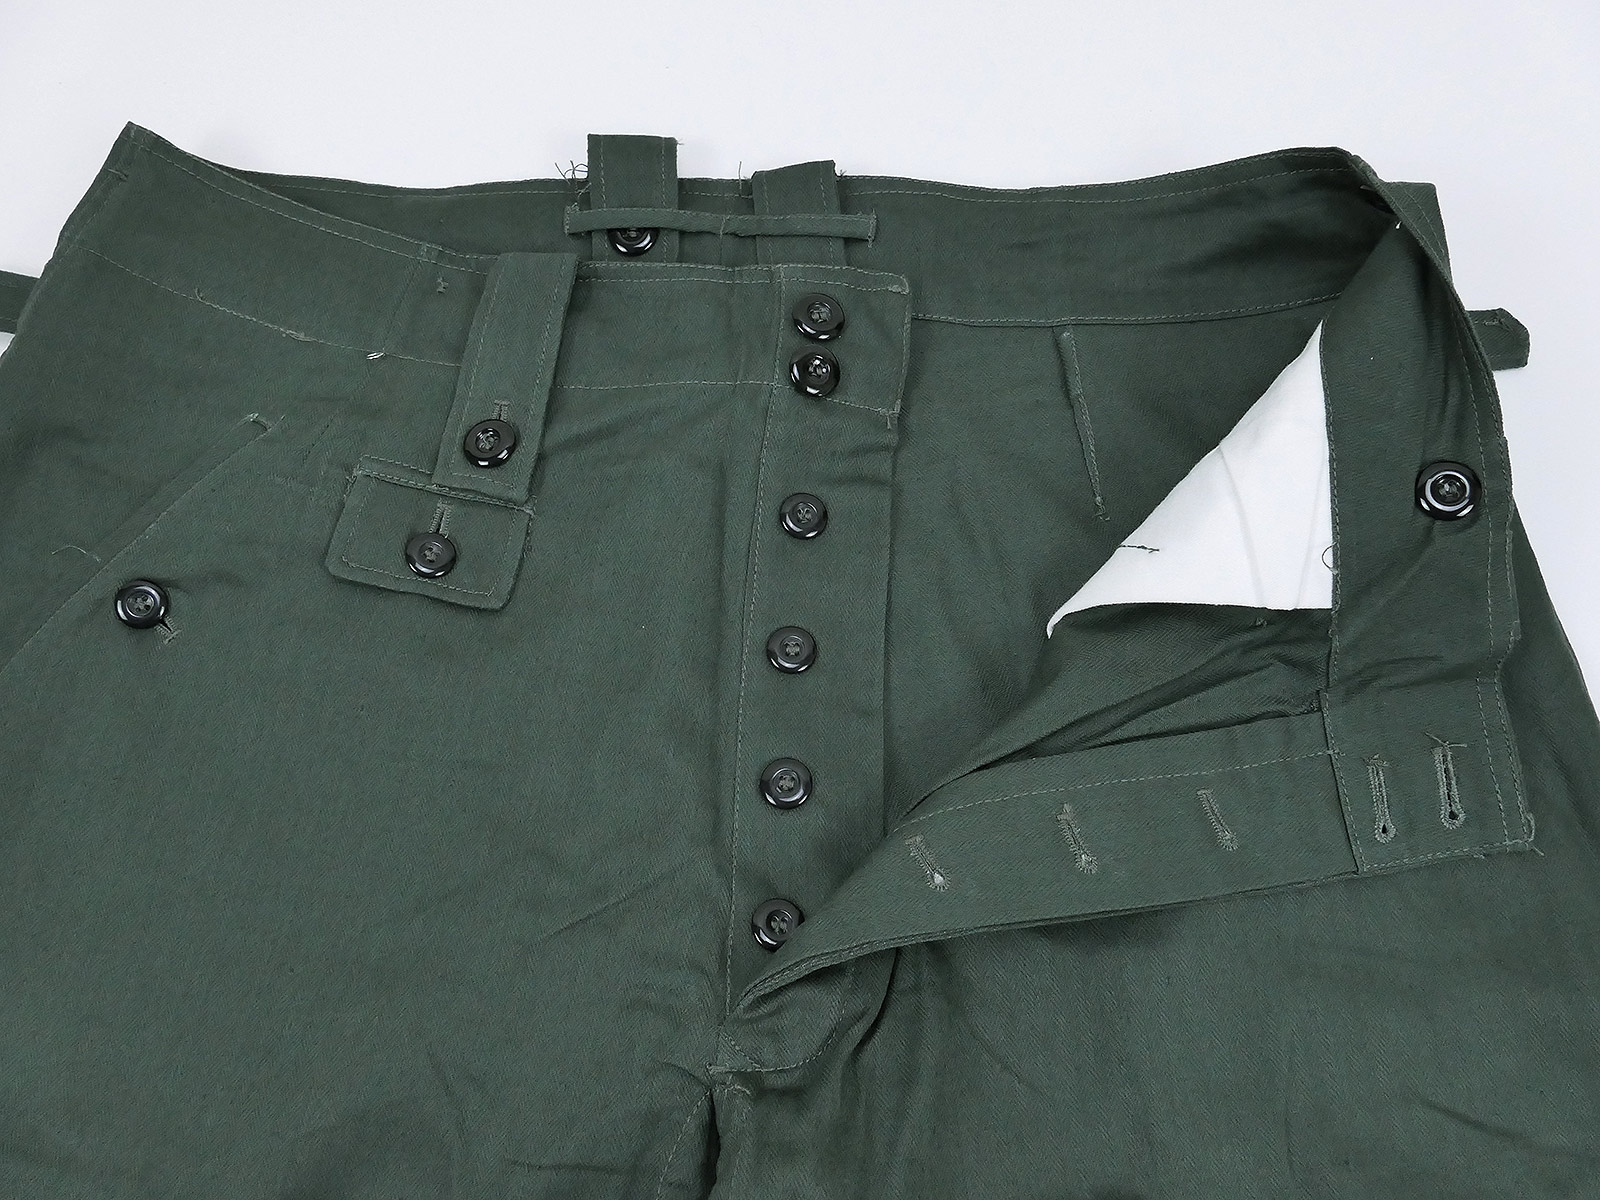 Single piece - Drillichhose wedge trousers Wehrmacht Feldhose M43 HBT ...